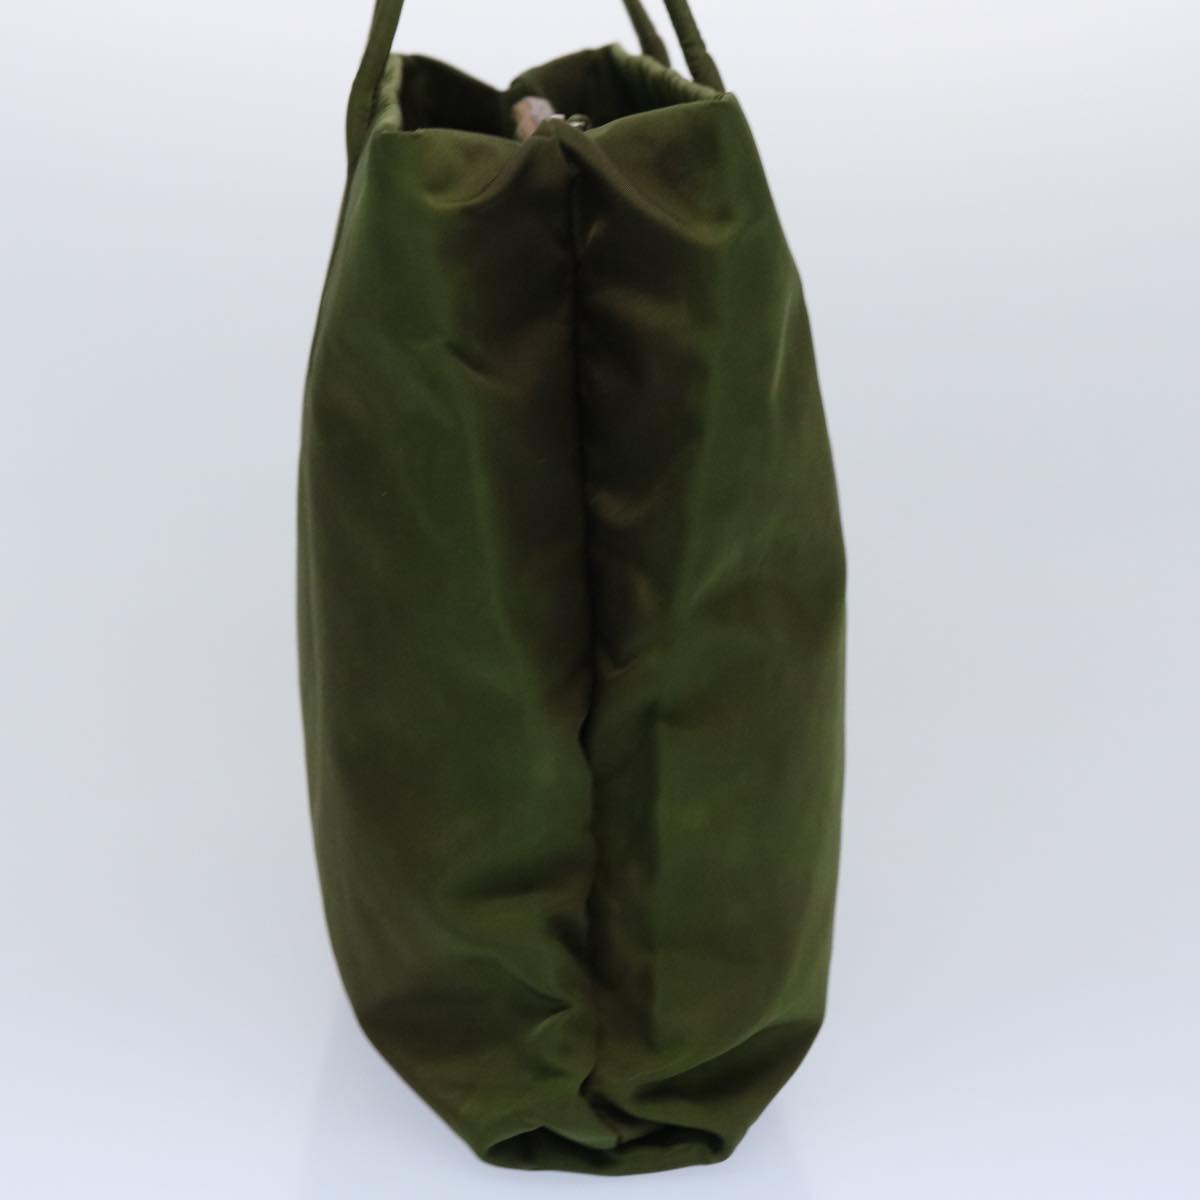 PRADA Hand Bag Nylon Khaki Auth 60956